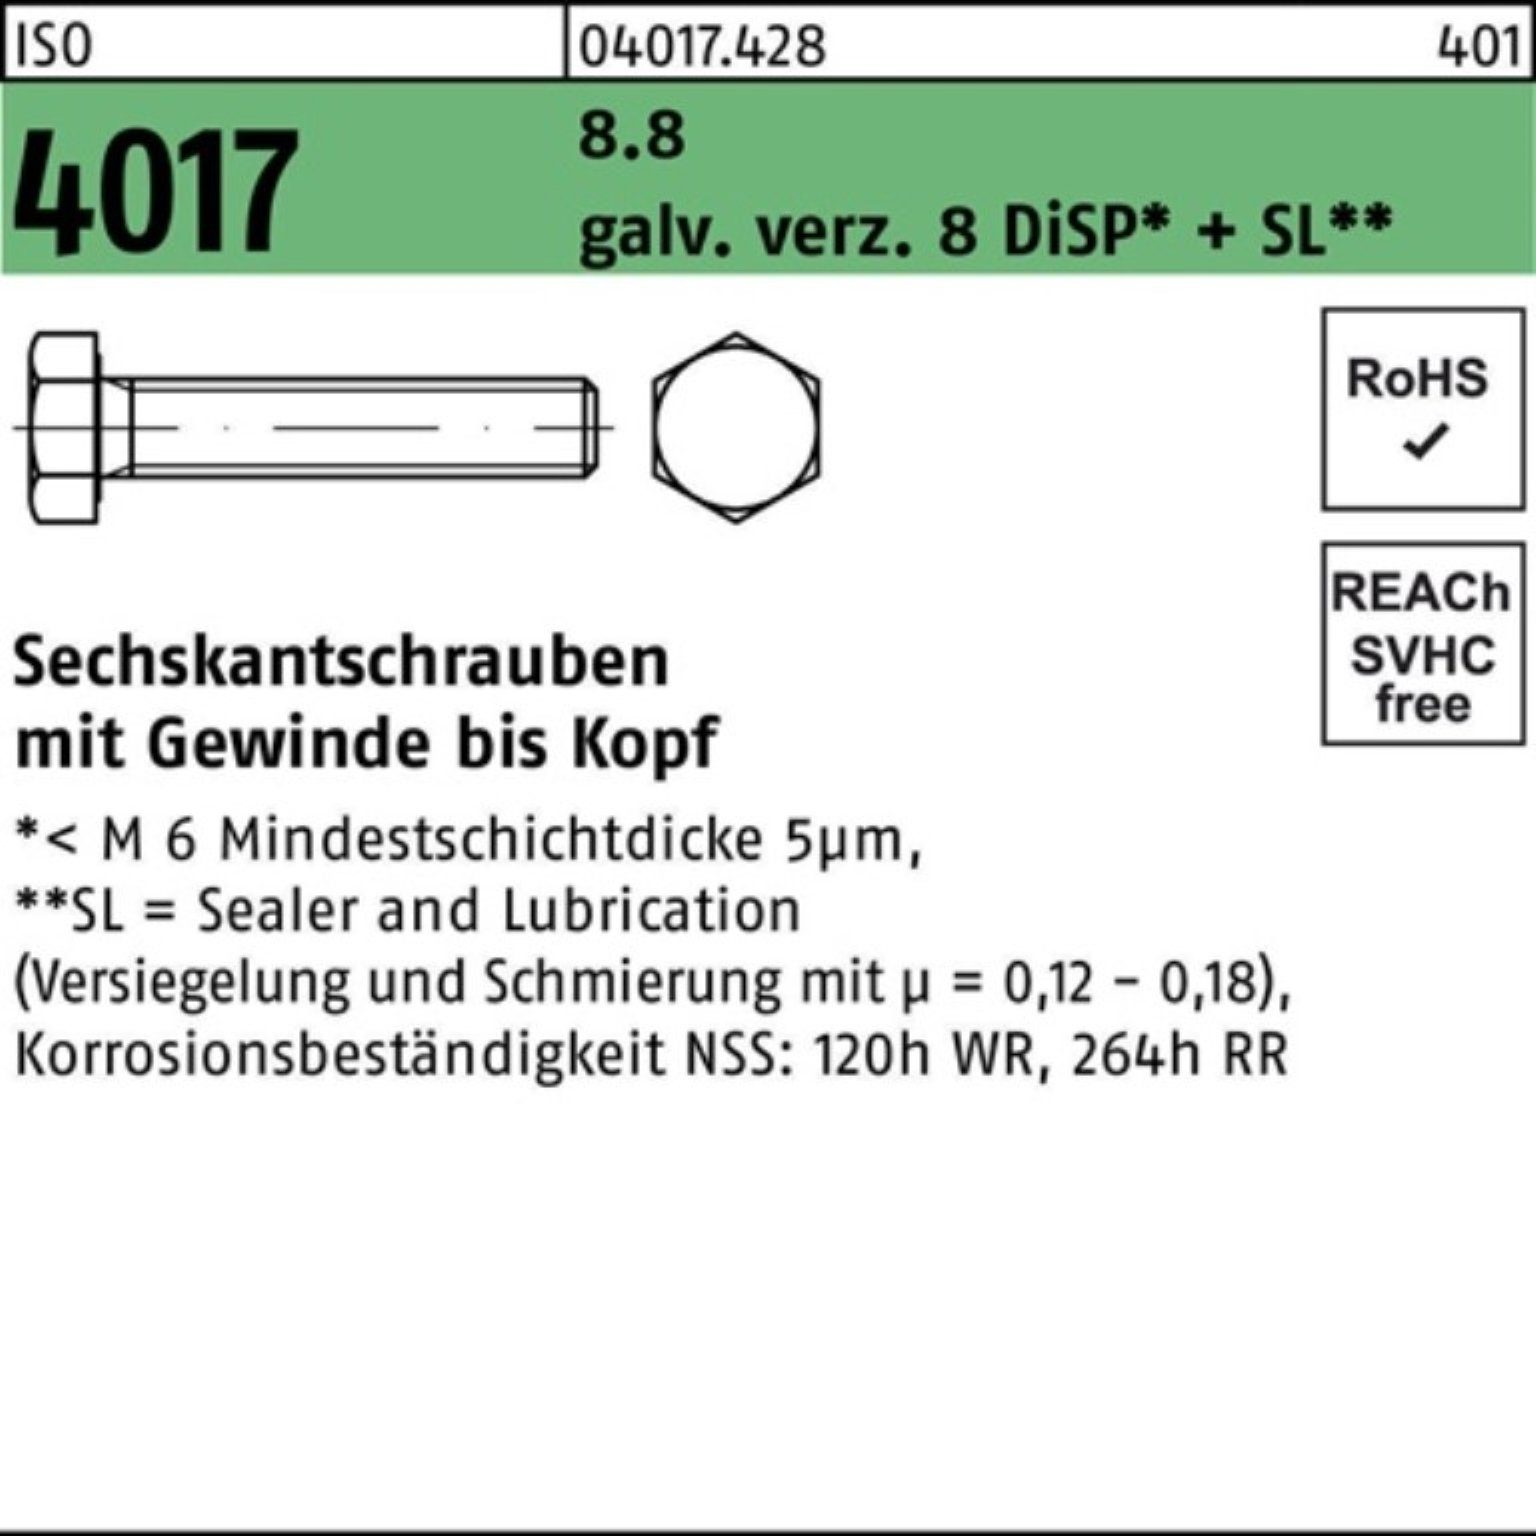 Bufab Sechskantschraube 100er Pack Sechskantschraube 8.8 4017 VG DiSP ISO 8 M20x galv.verz. 45